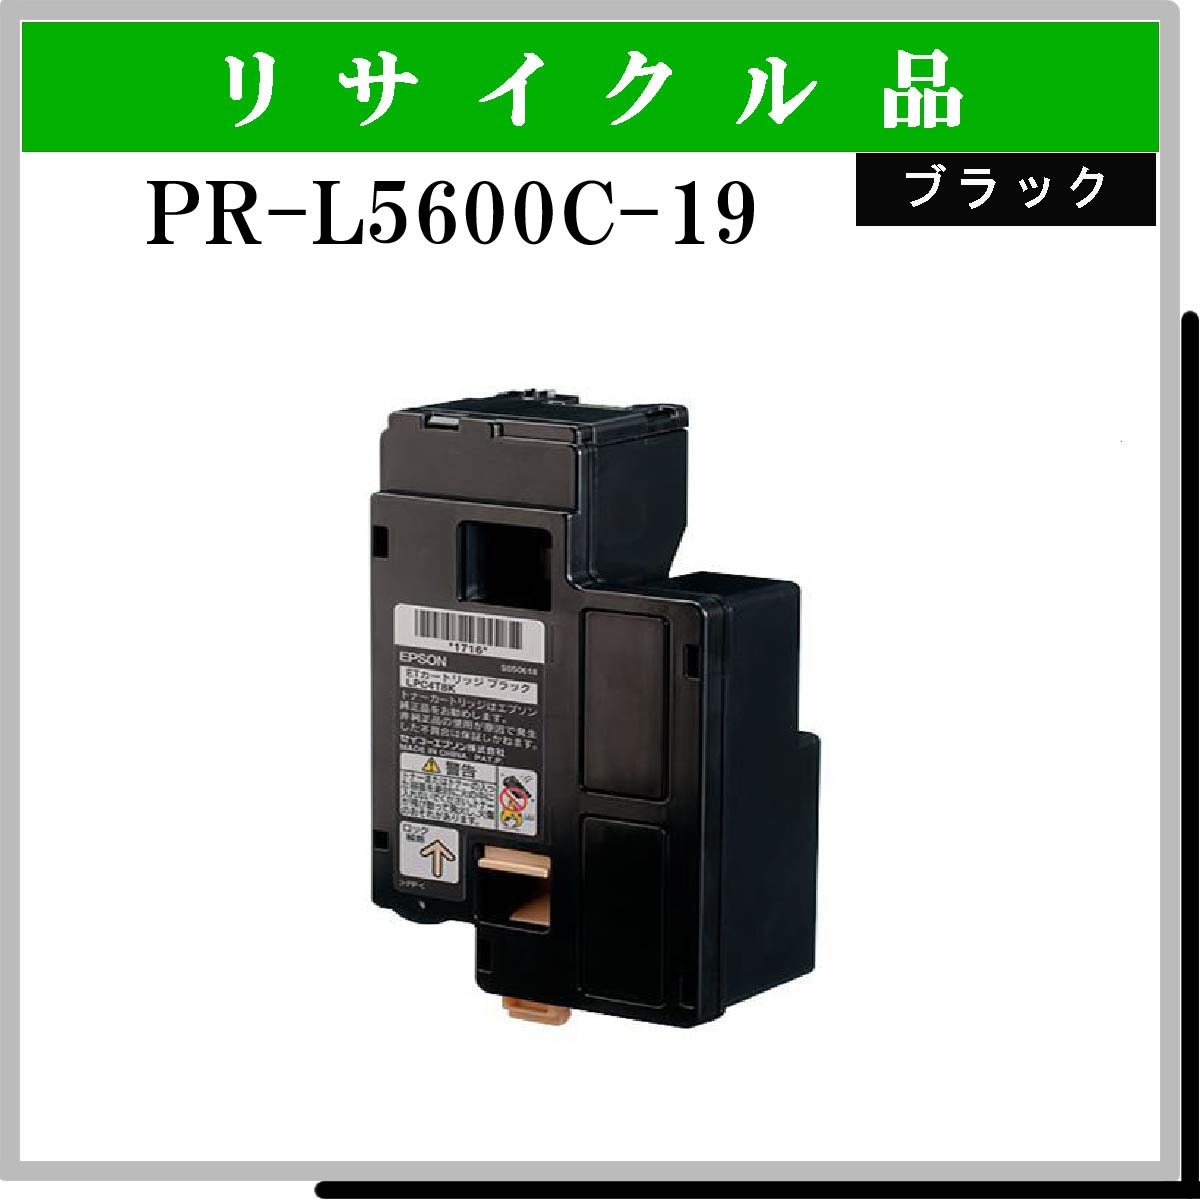 PR-L5600C-19